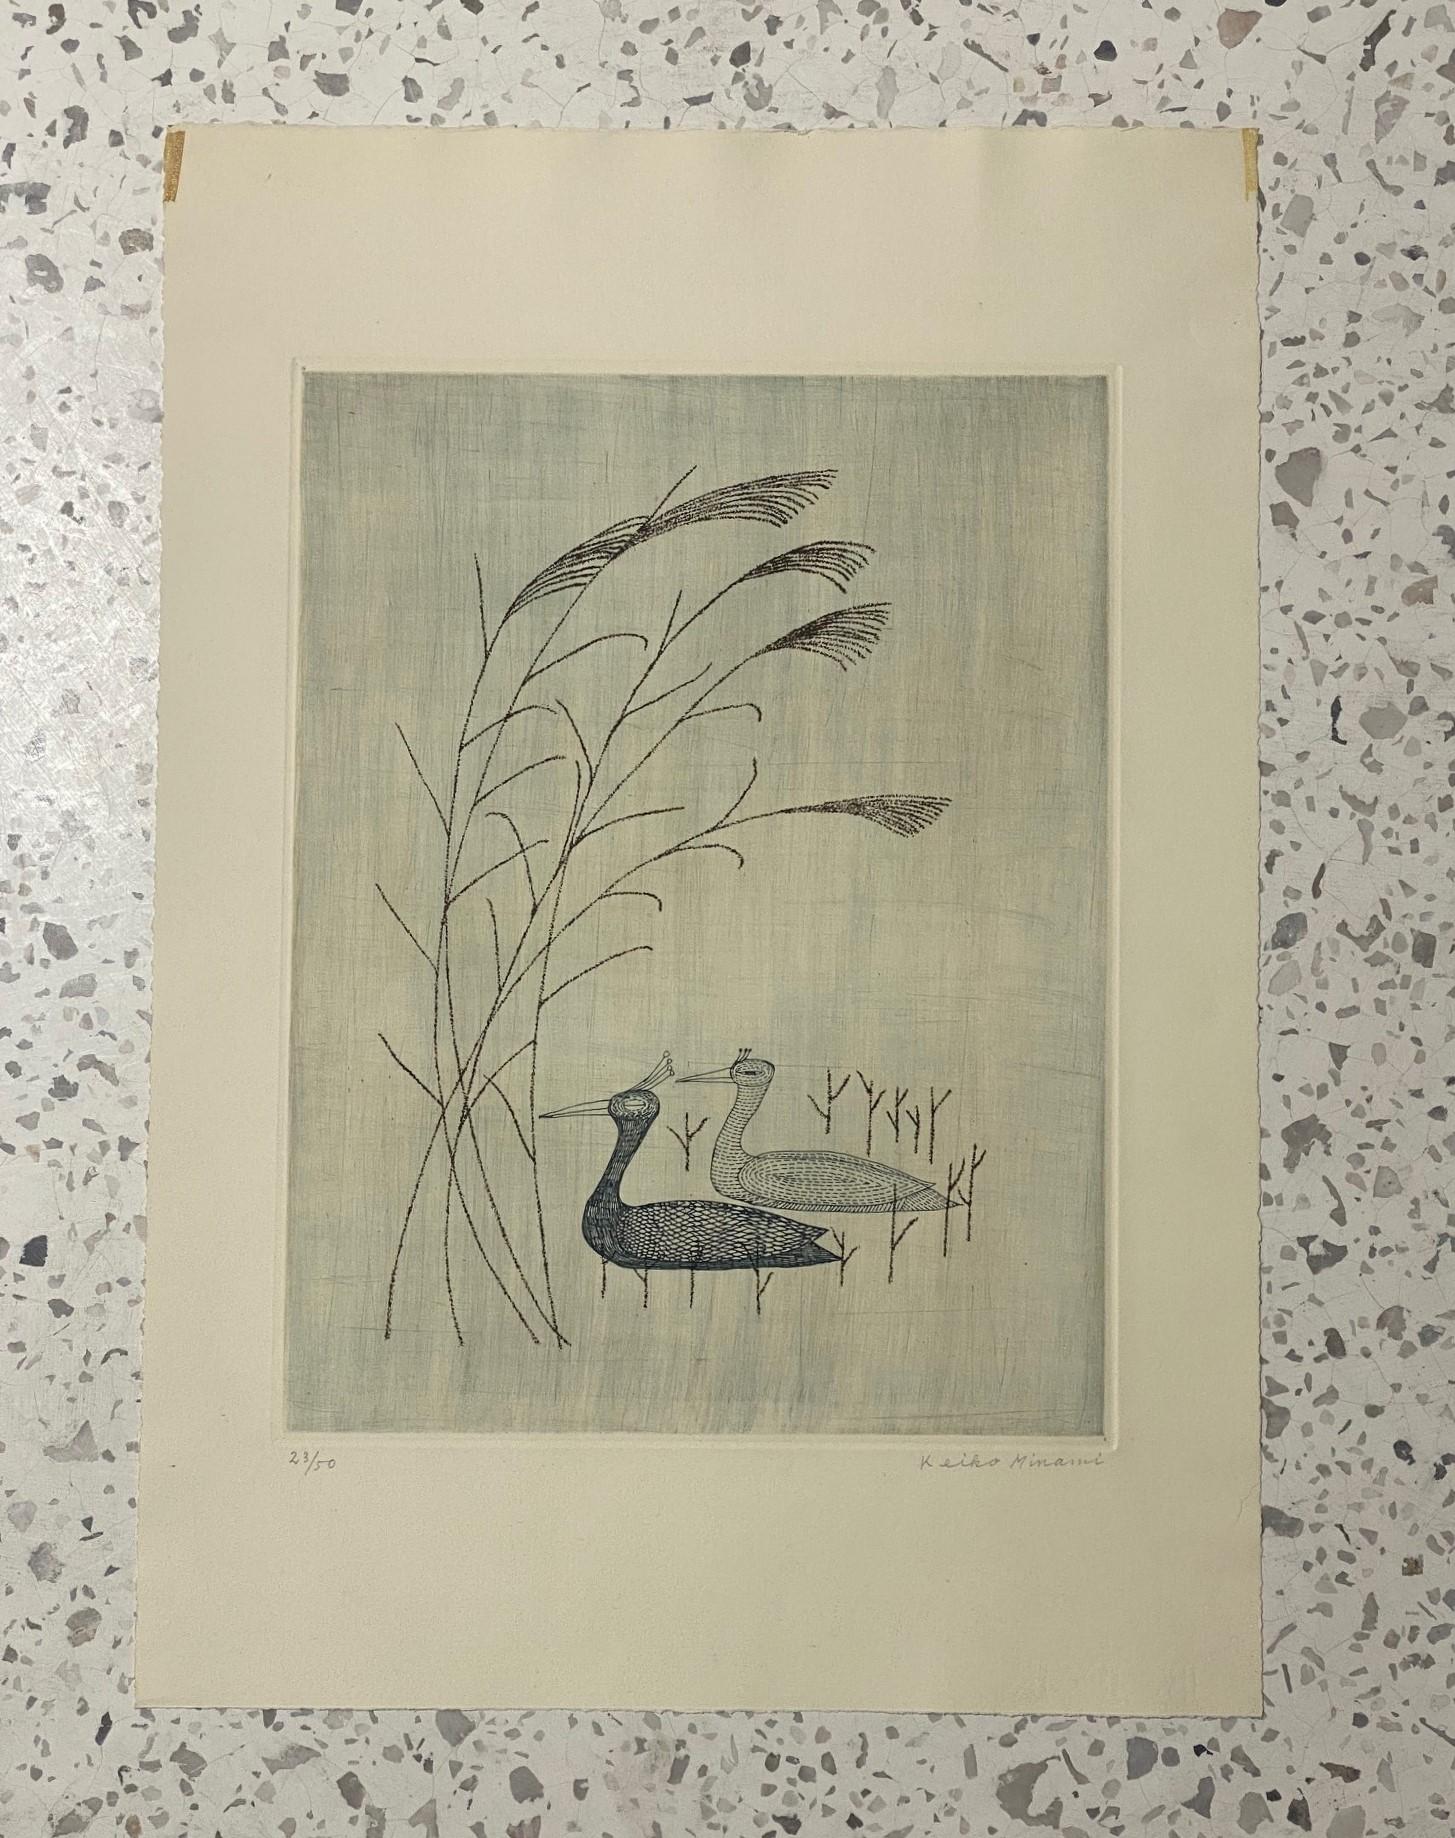 Eine schöne und recht skurrile Radierung der berühmten japanischen Künstlerin Keiko Minami, die für ihre piktogrammartigen Aquatinten/Radierungen mit einer verspielten, kindlichen Ästhetik bekannt war. Dieses Werk zeigt ein Vogelpaar - vielleicht